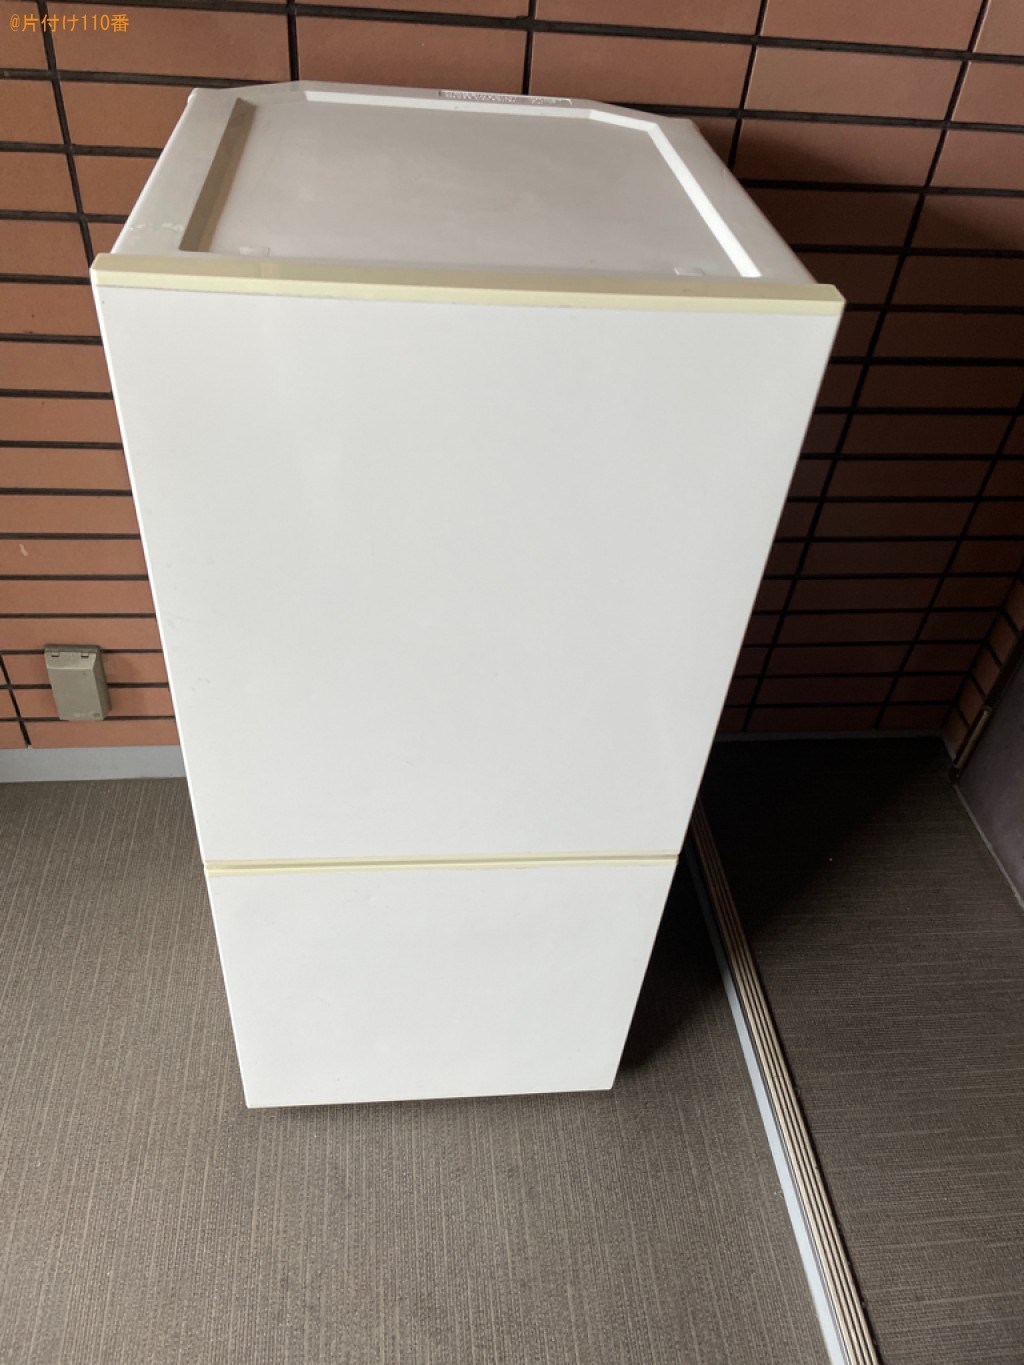 【京都市南区】170L未満冷蔵庫の出張不用品回収・処分ご依頼